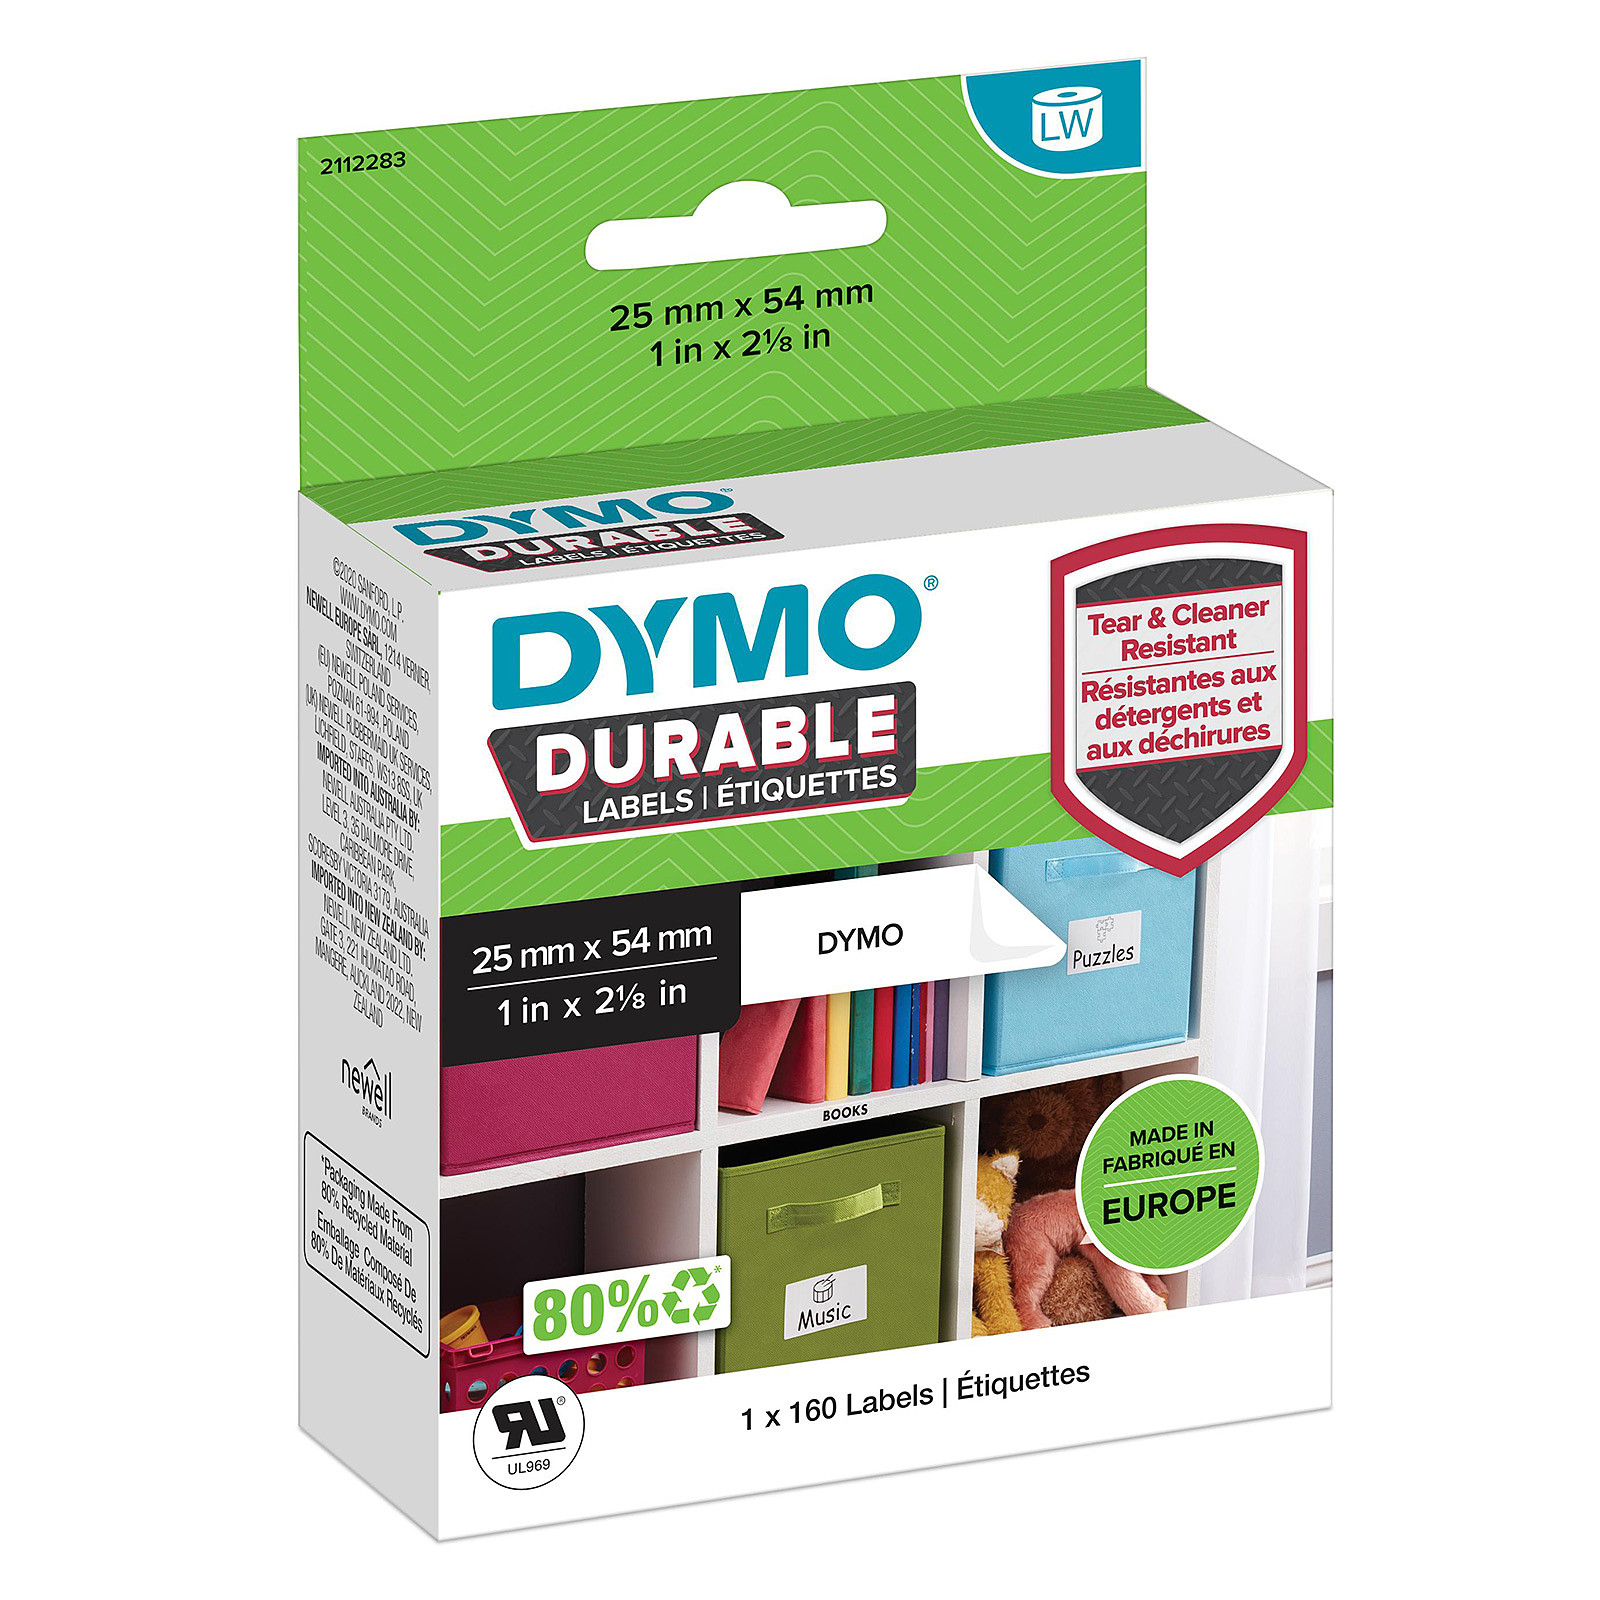 DYMO LW rouleau d'etiquettes universelles permanentes blanches - 25 x 54 mm - Papier imprimante DYMO